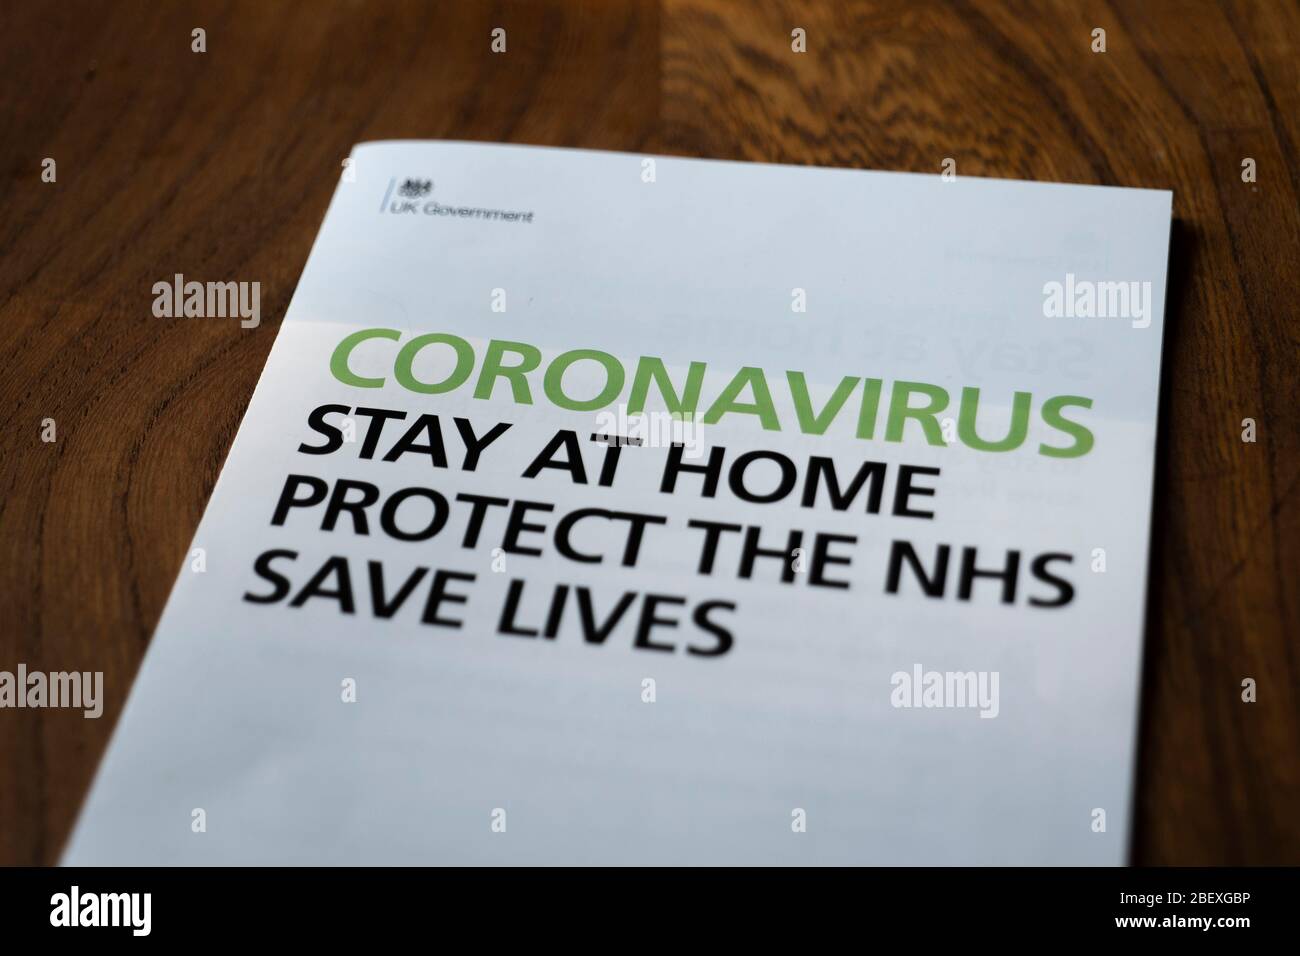 Coronavirus UK carta del gobierno que describe los detalles sobre "el almacenamiento en casa, proteger el NHS y salvar vidas" recibido el 11 de abril de 2020. Foto de stock